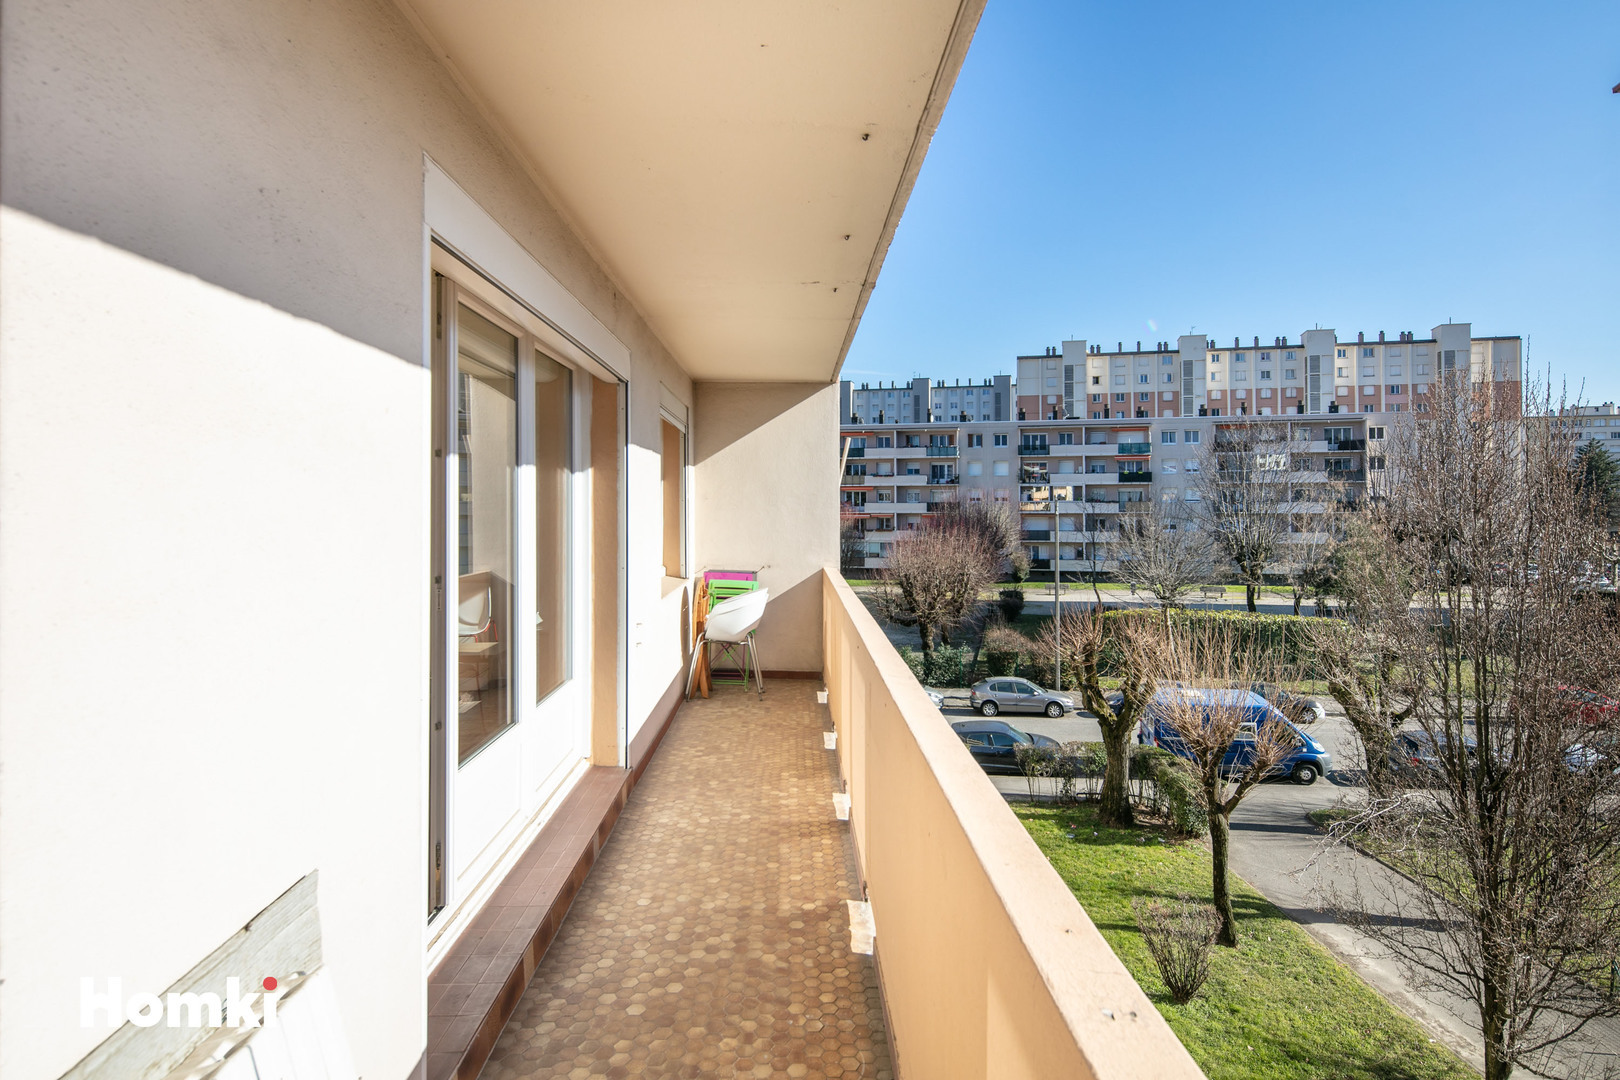 Homki - Vente Appartement  de 54.0 m² à Grenoble 38100